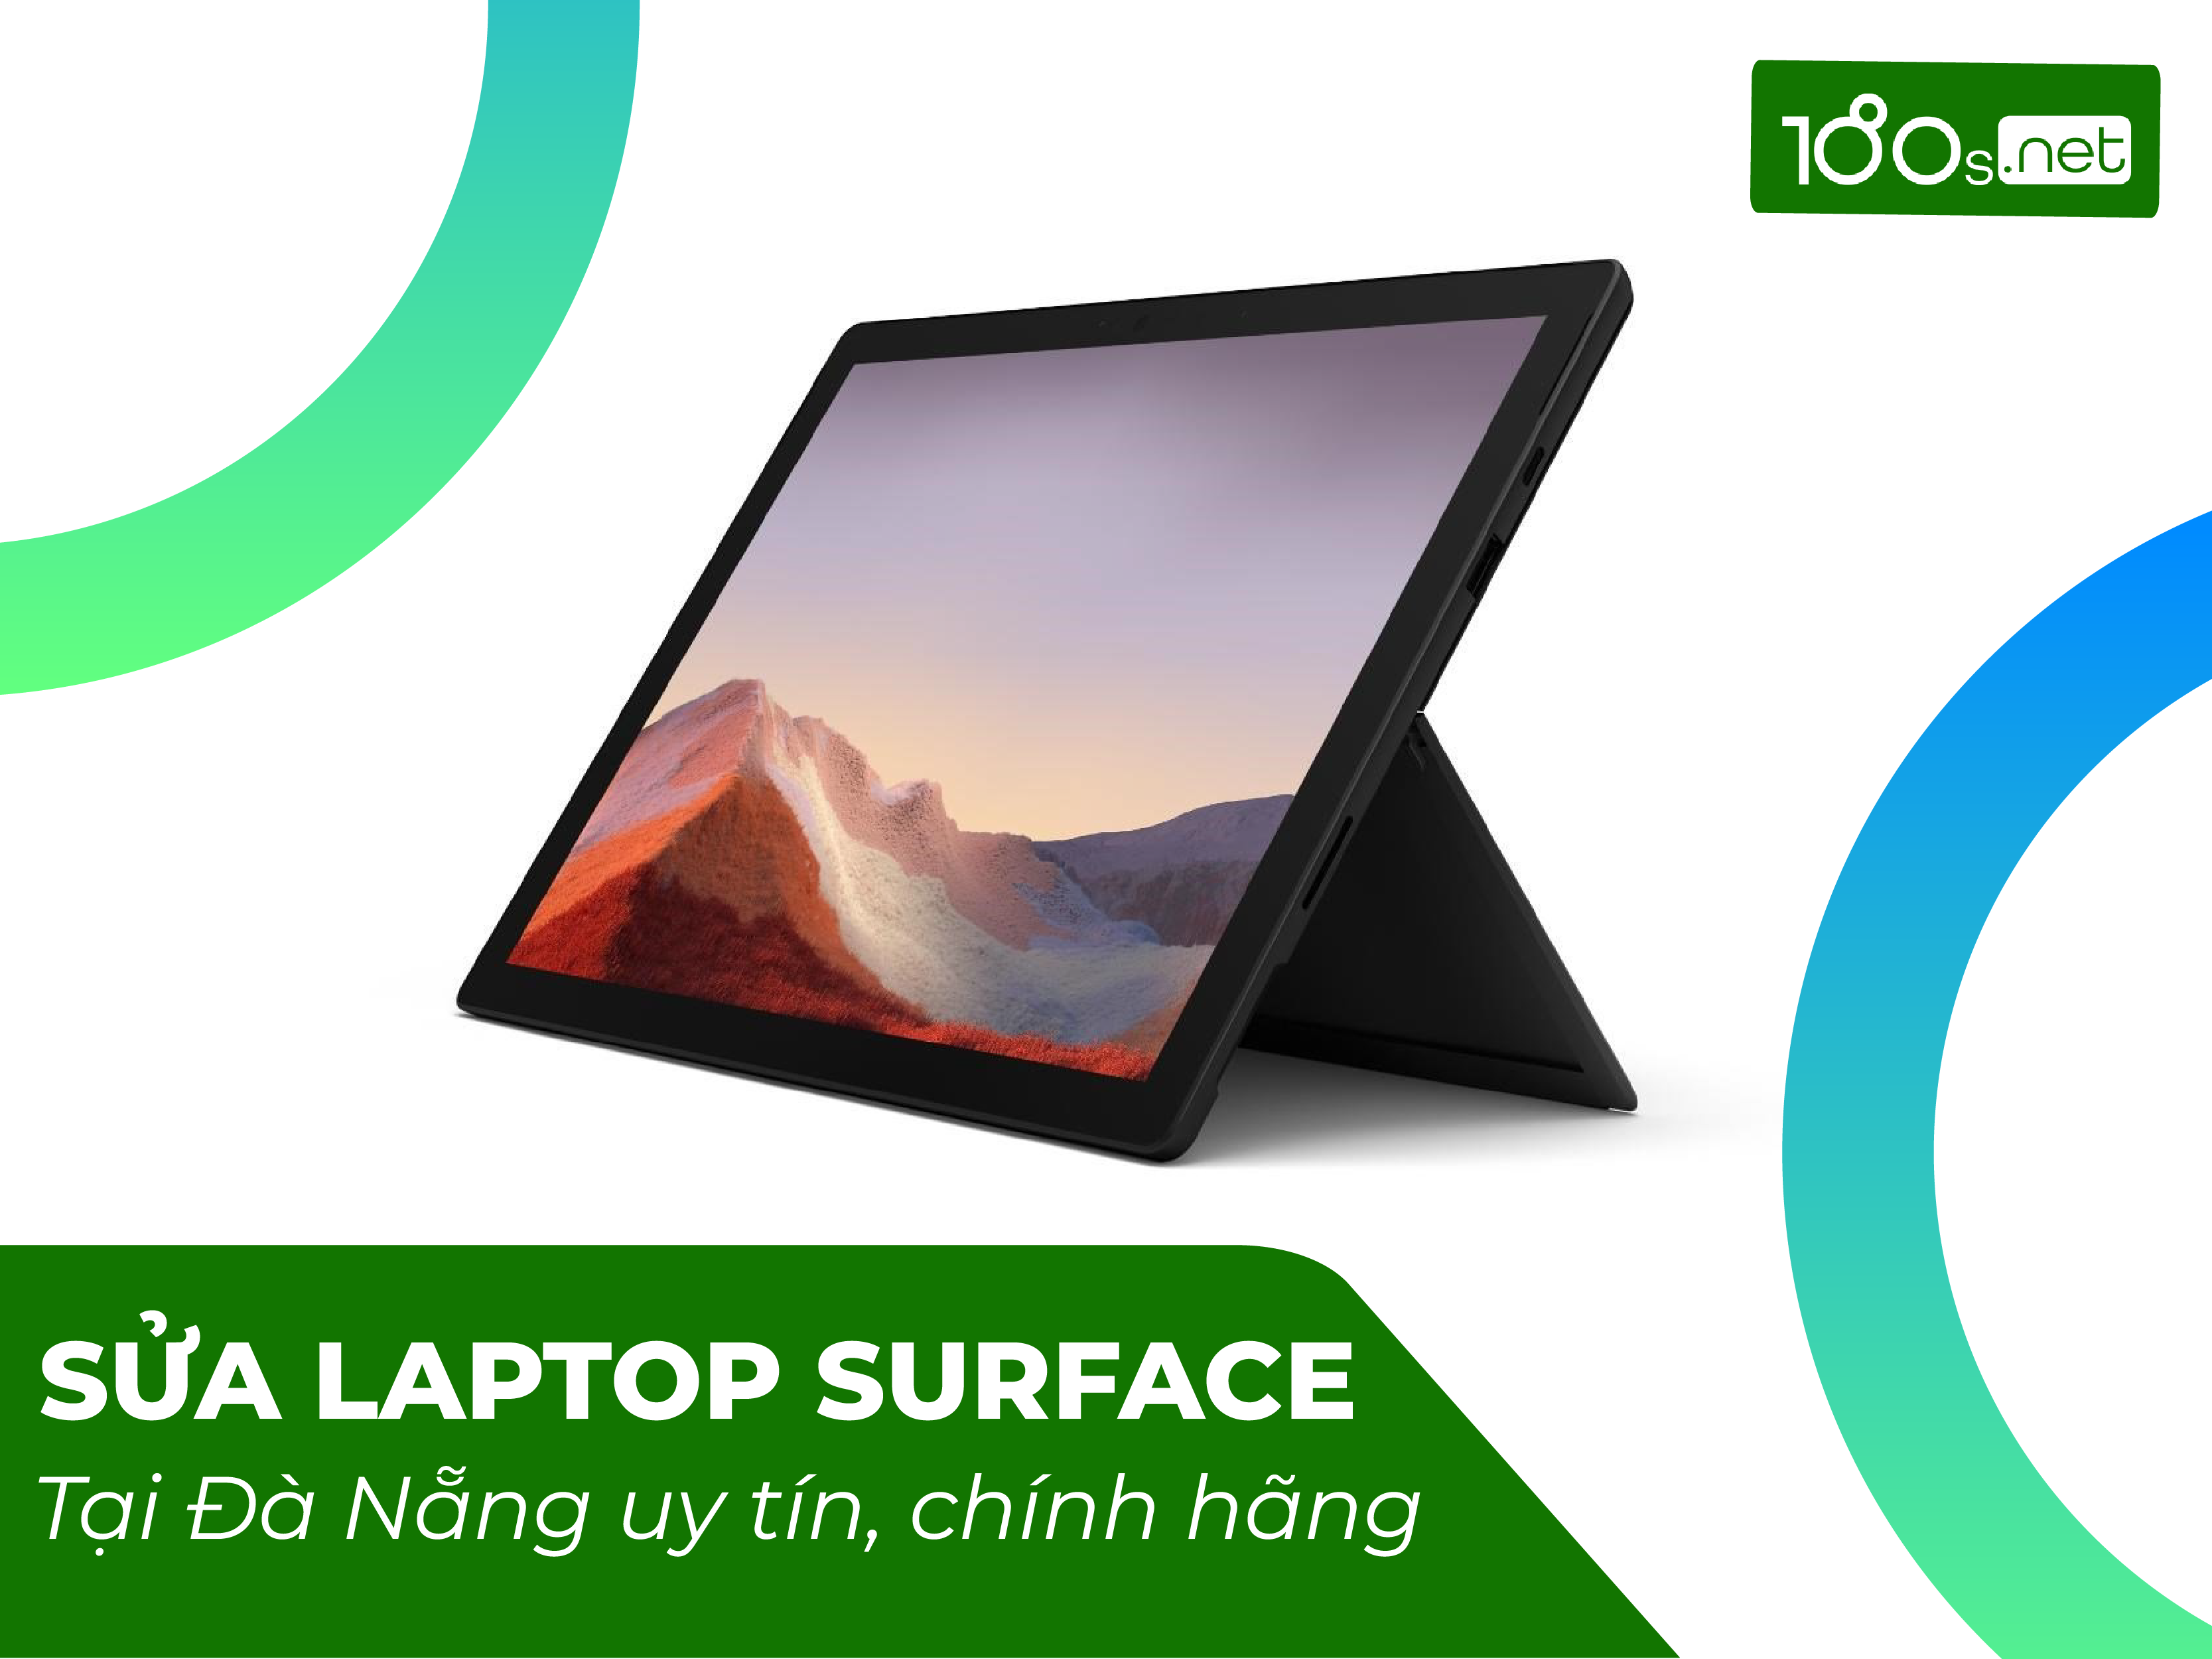 Sửa Laptop Surface tại Đà nẵng uy tín, chính hãng